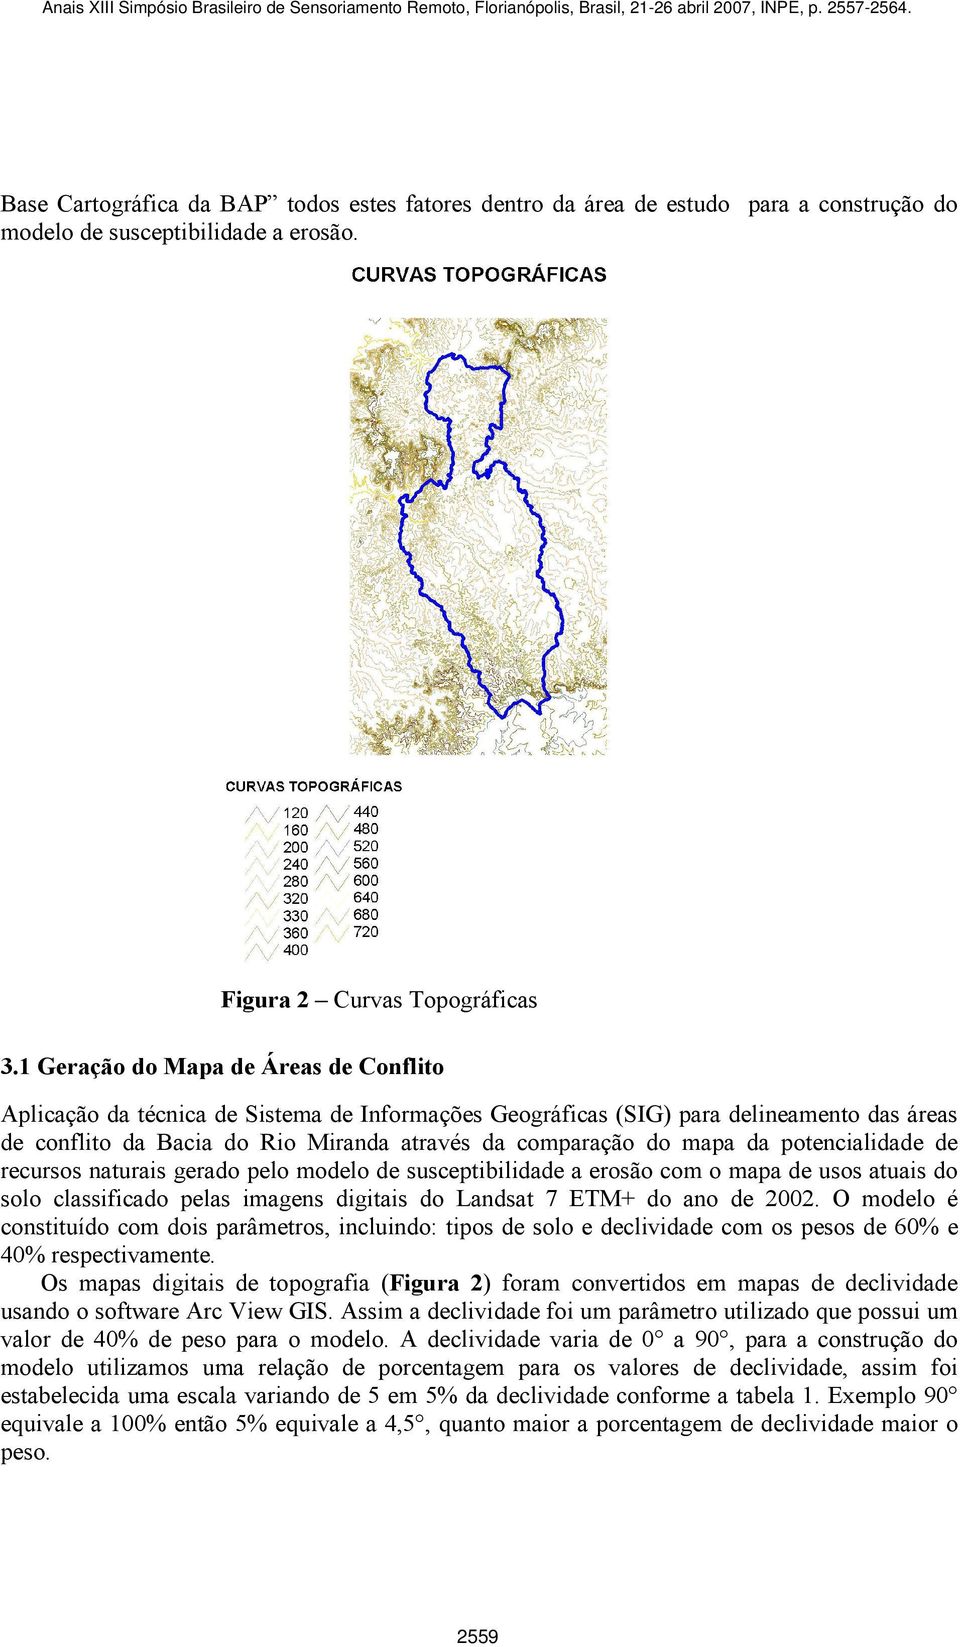 da potencialidade de recursos naturais gerado pelo modelo de susceptibilidade a erosão com o mapa de usos atuais do solo classificado pelas imagens digitais do Landsat 7 ETM+ do ano de 2002.